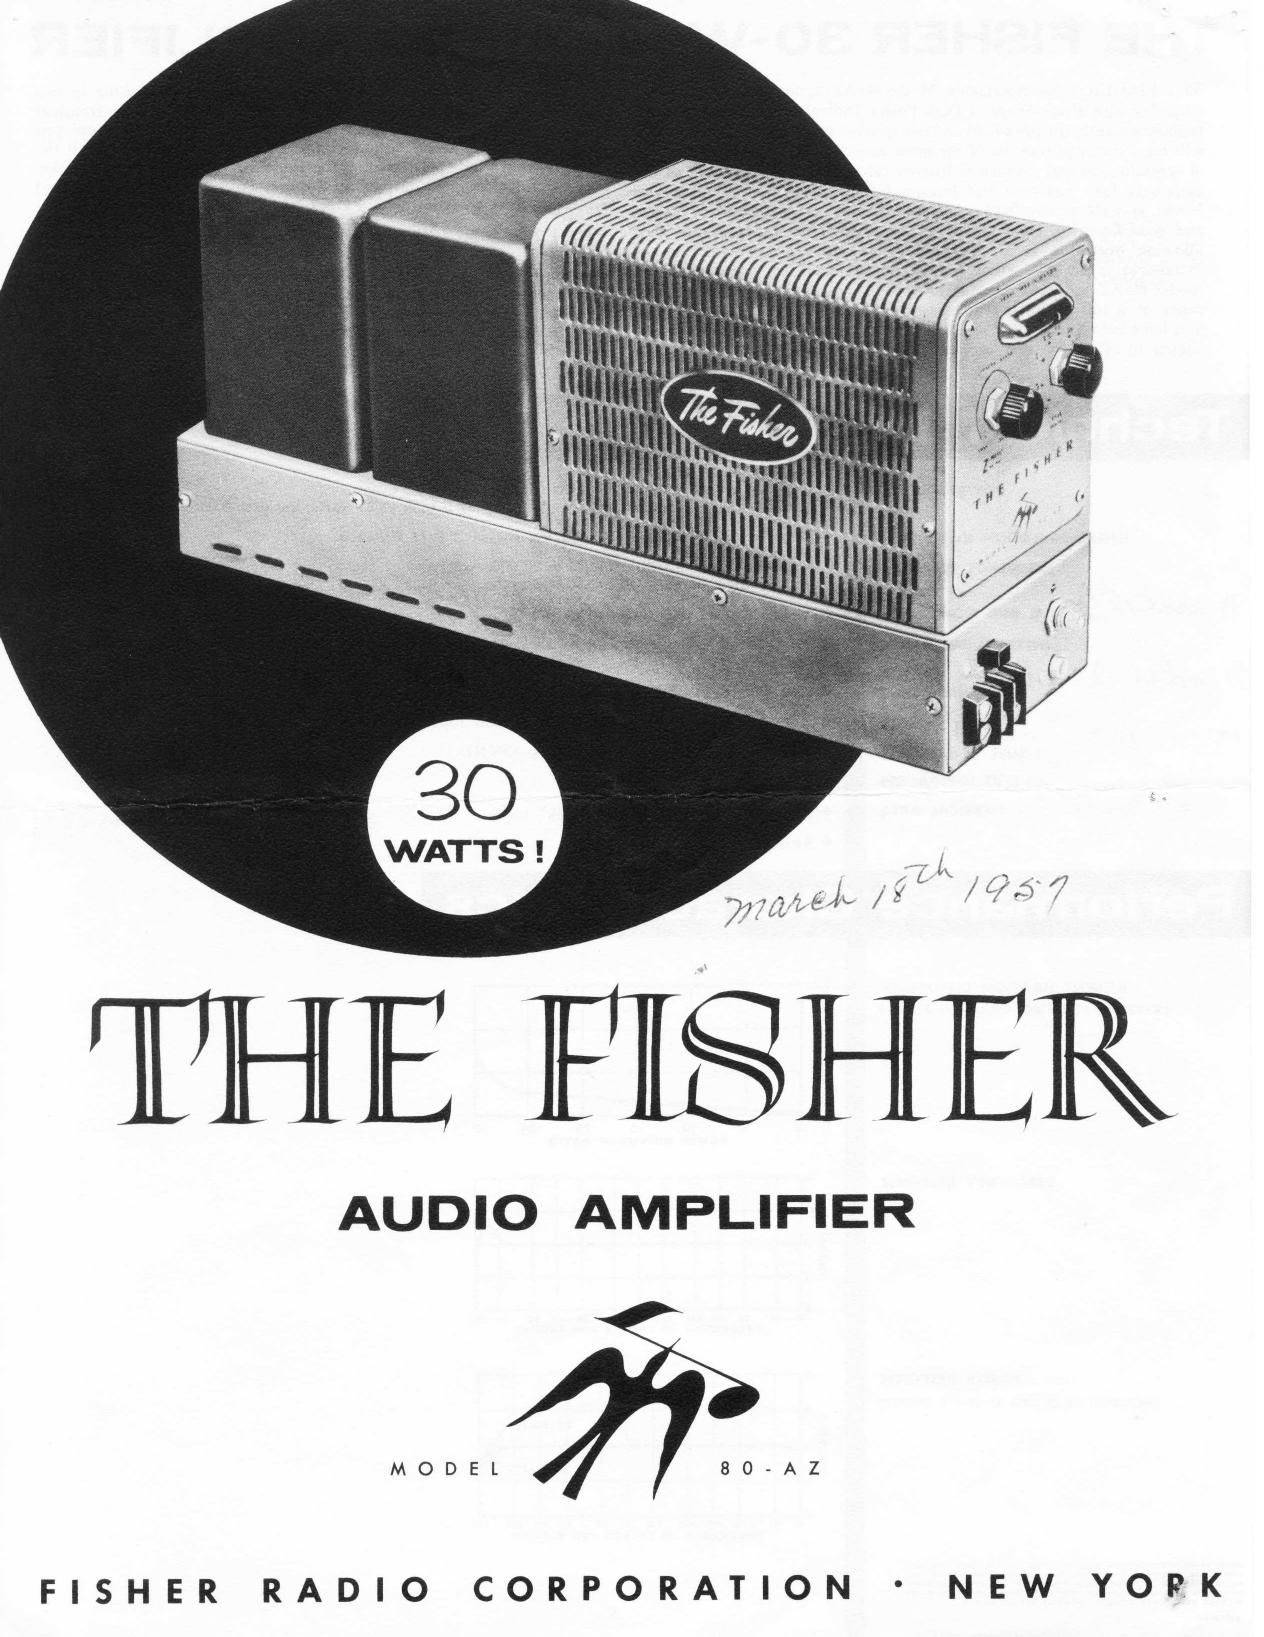 Fisher 80-AZ